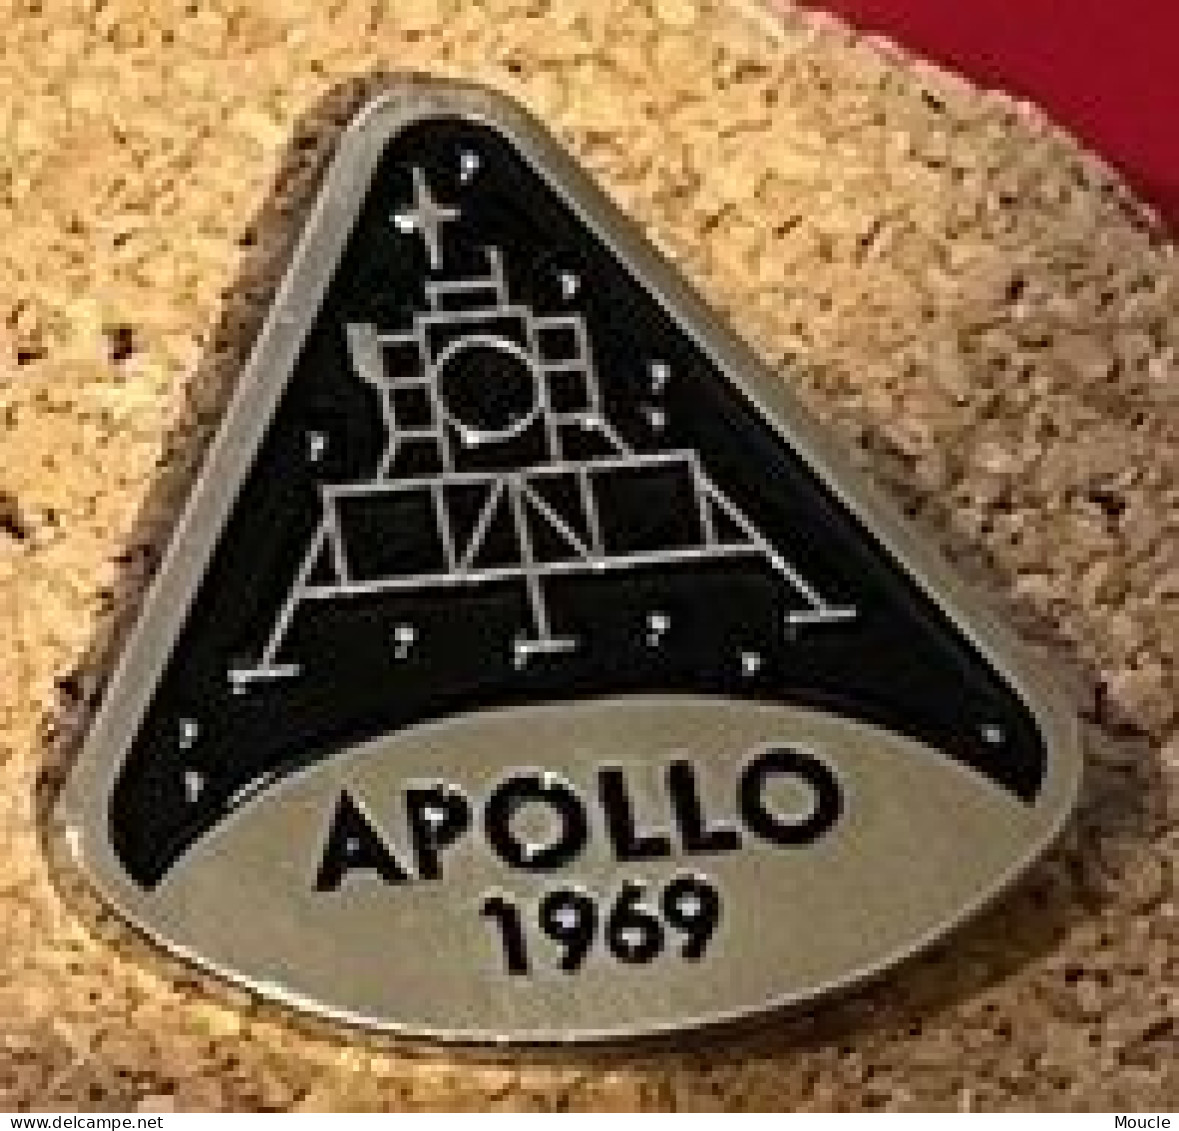 APOLLO 1969 - NASA - ESPACE - SPACE - MODULE - FUSEE -  (30) - Espacio